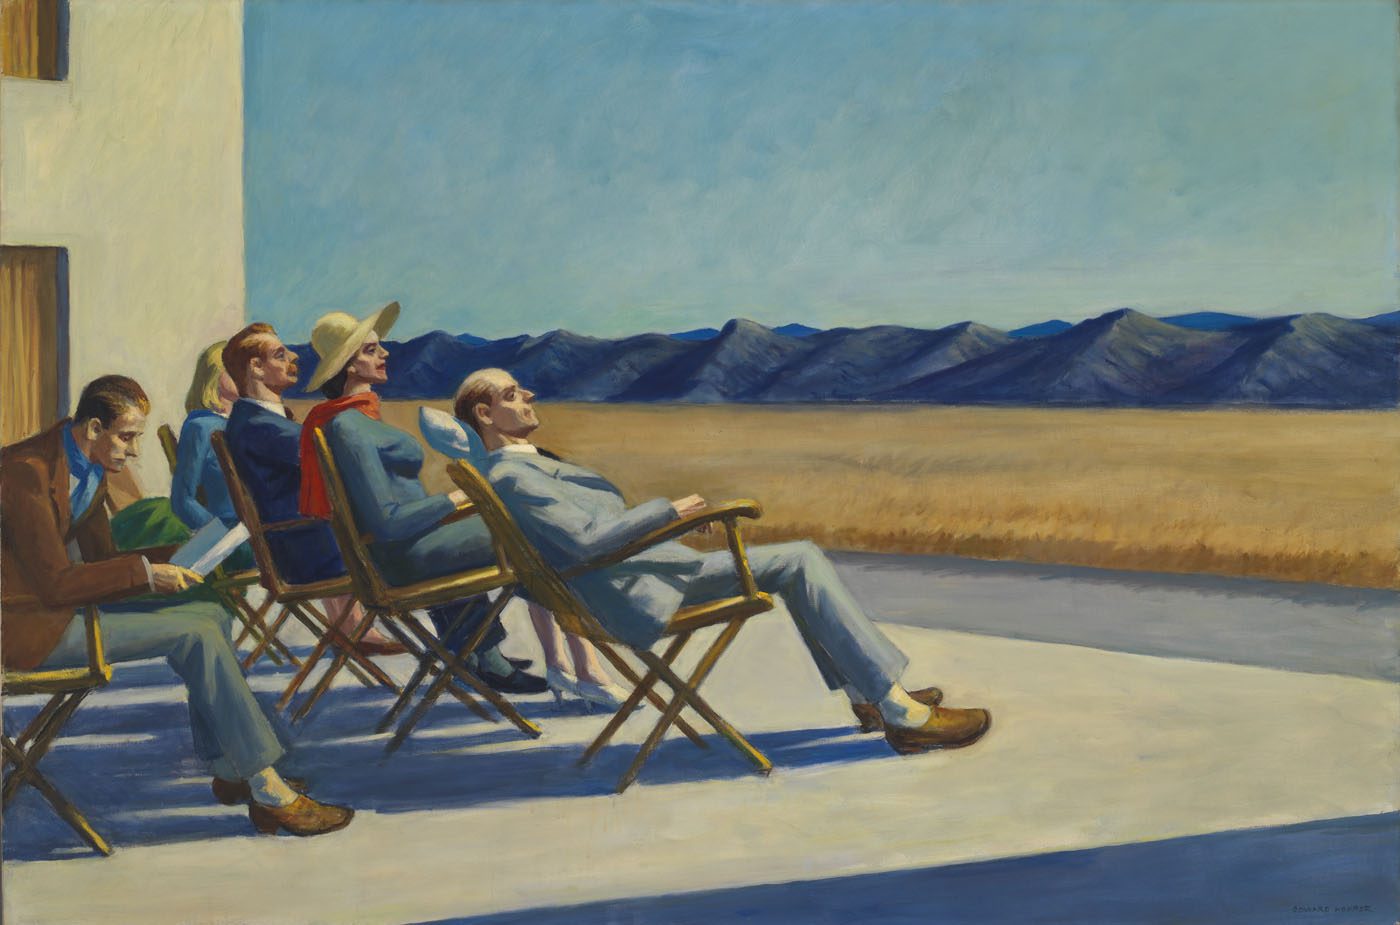 Edward Hopper's People in the Sun